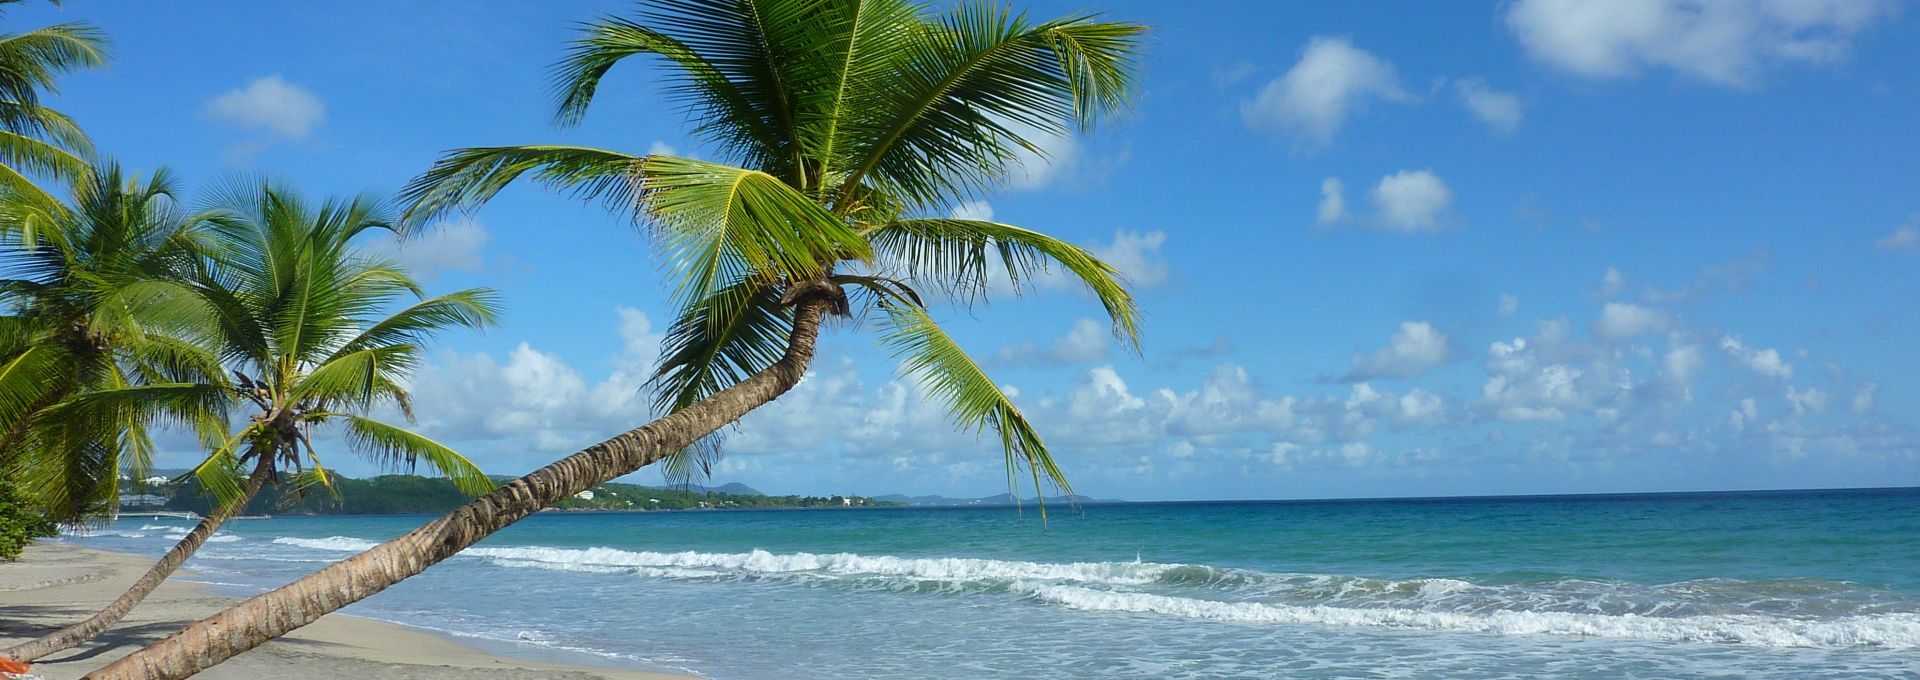 Diamond Beach in Martinique